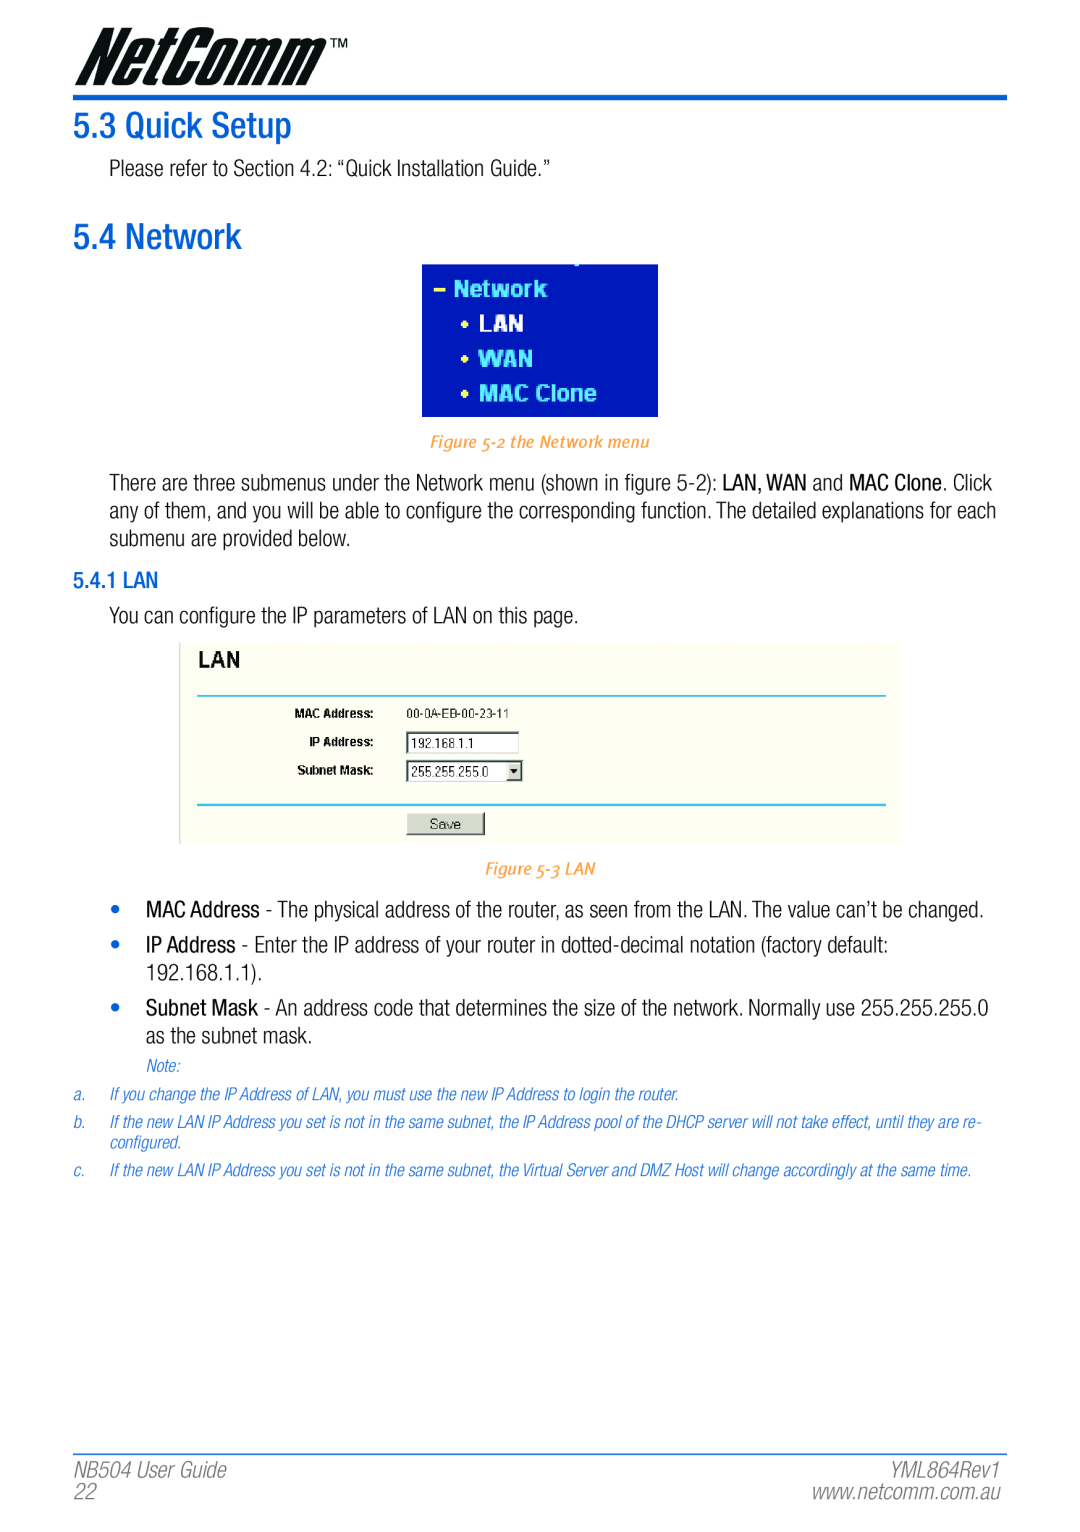 NetComm manual Quick Setup, 5.4.1 LAN, NB504 User Guide, 2 the Network menu, 3 LAN, YML864Rev1 